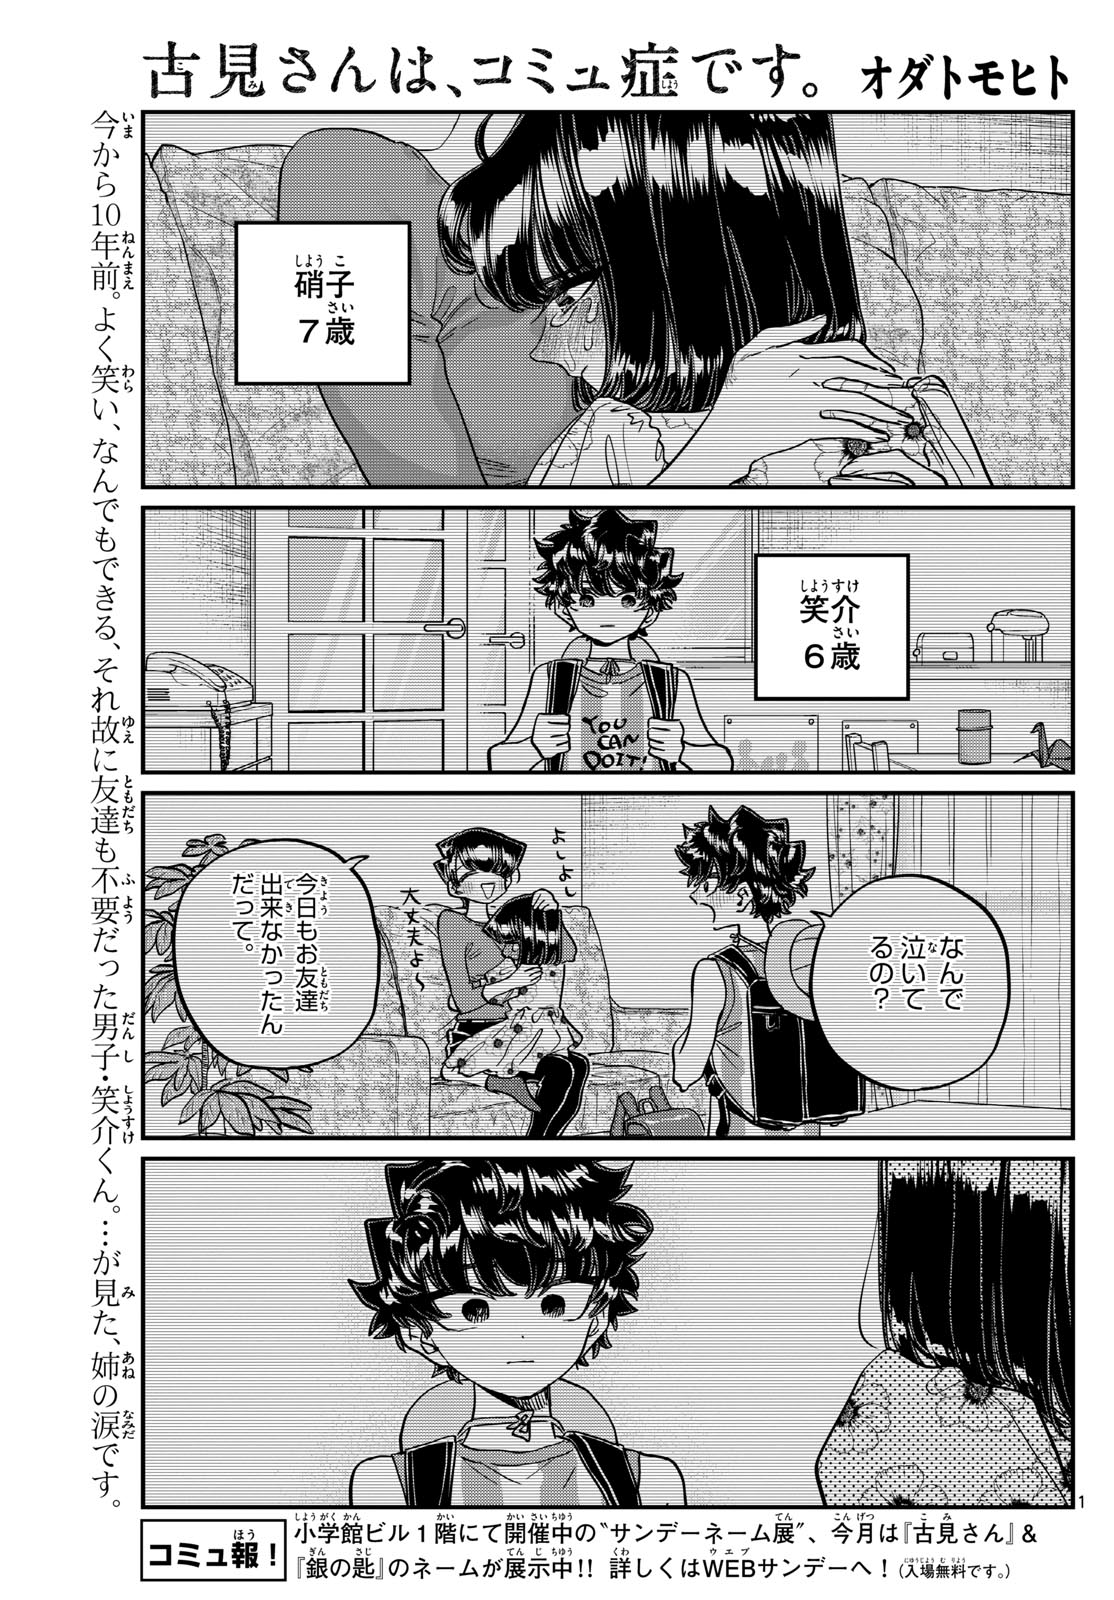 Komi-san wa Komyushou Desu - Chapter 462 - Page 1